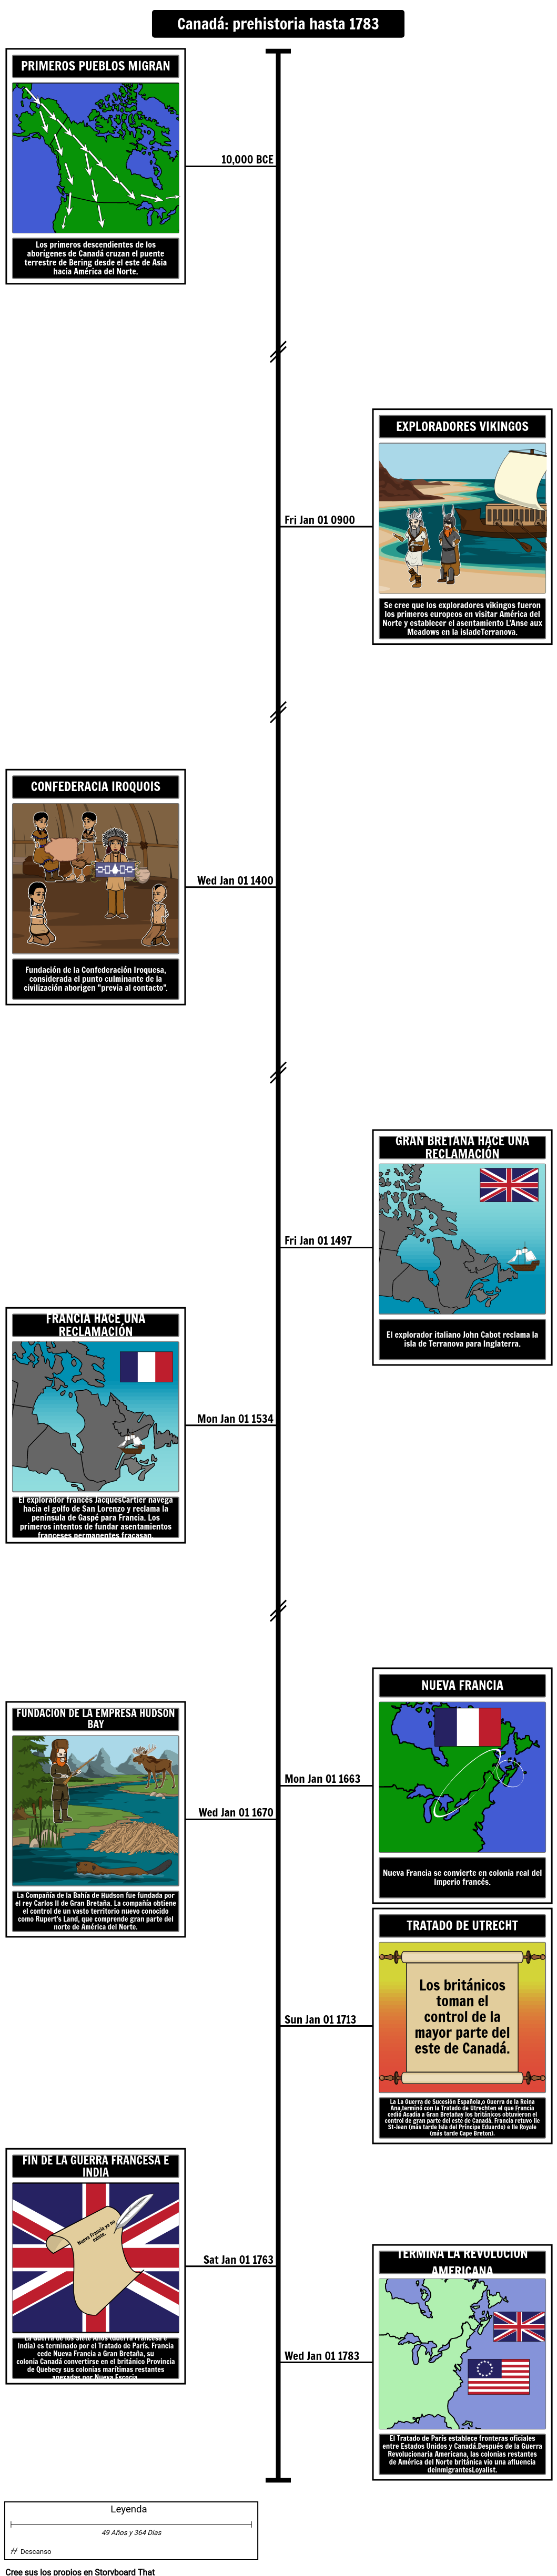 Cronología de la historia canadiense Prehistoria hasta 1783